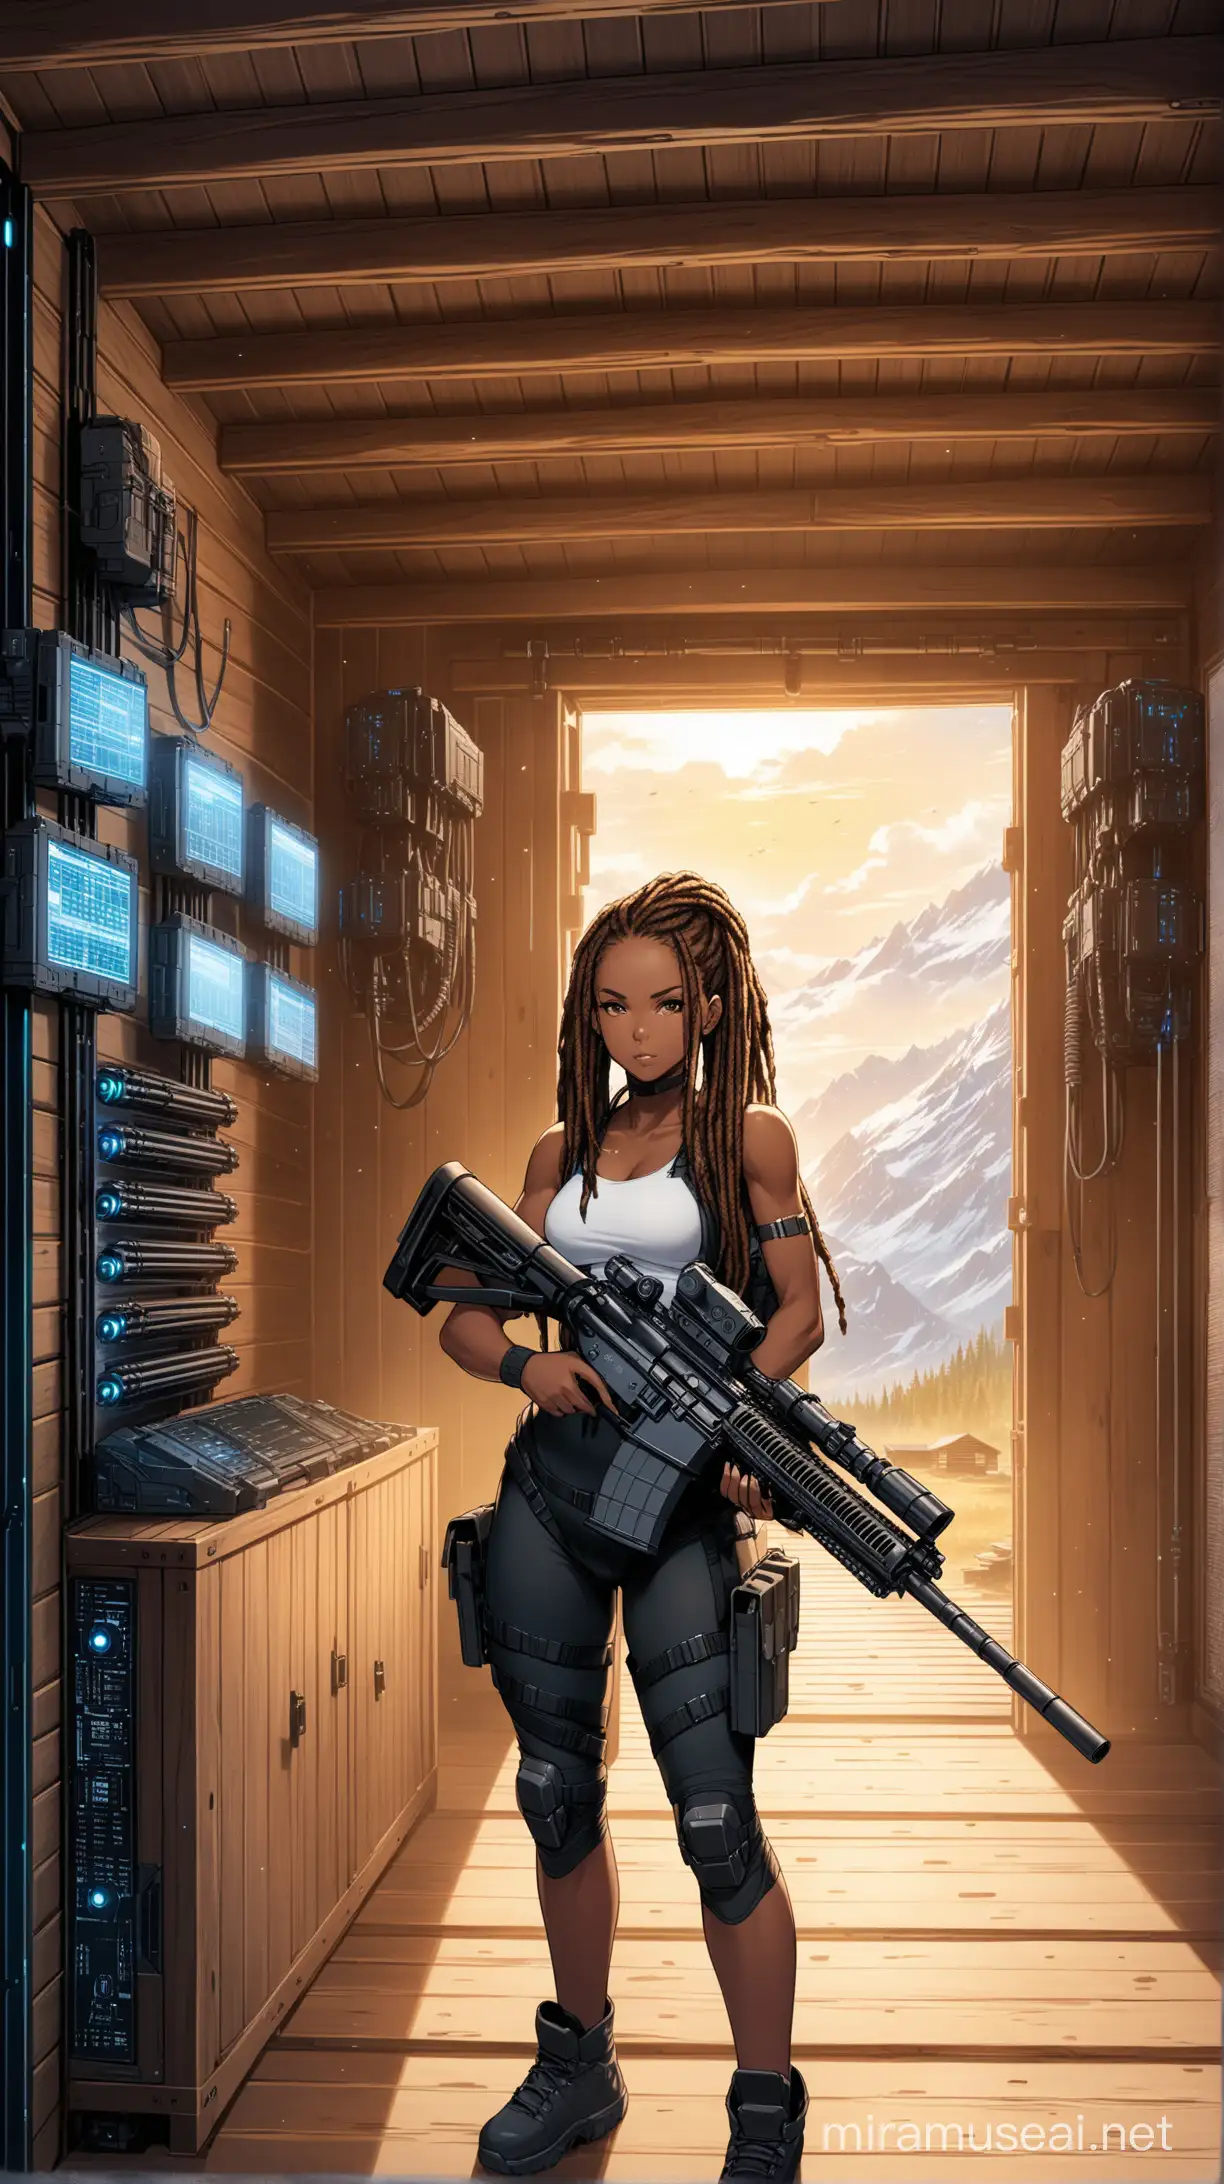 Fierce Black Girl with Dreadlocks Wielding Massive Rifle in HighTech Cabin